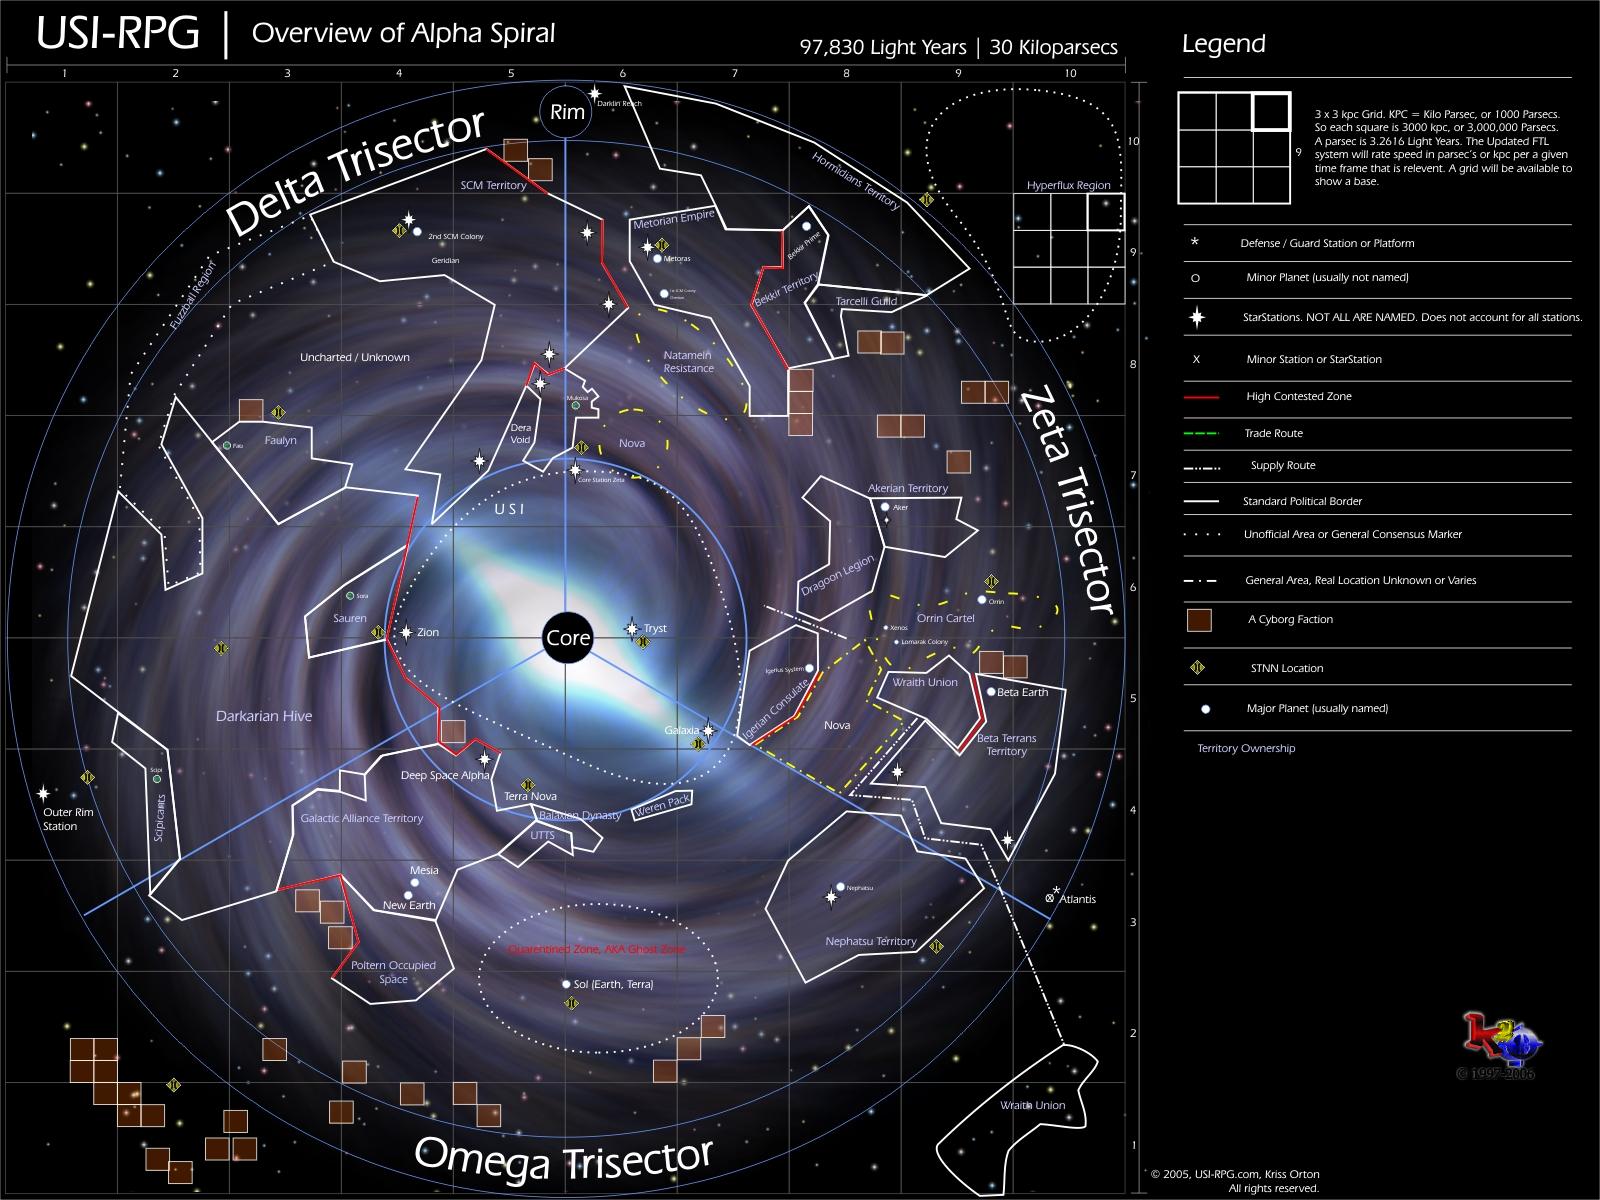 Mass effect 3 карта галактики с ресурсами - 87 фото